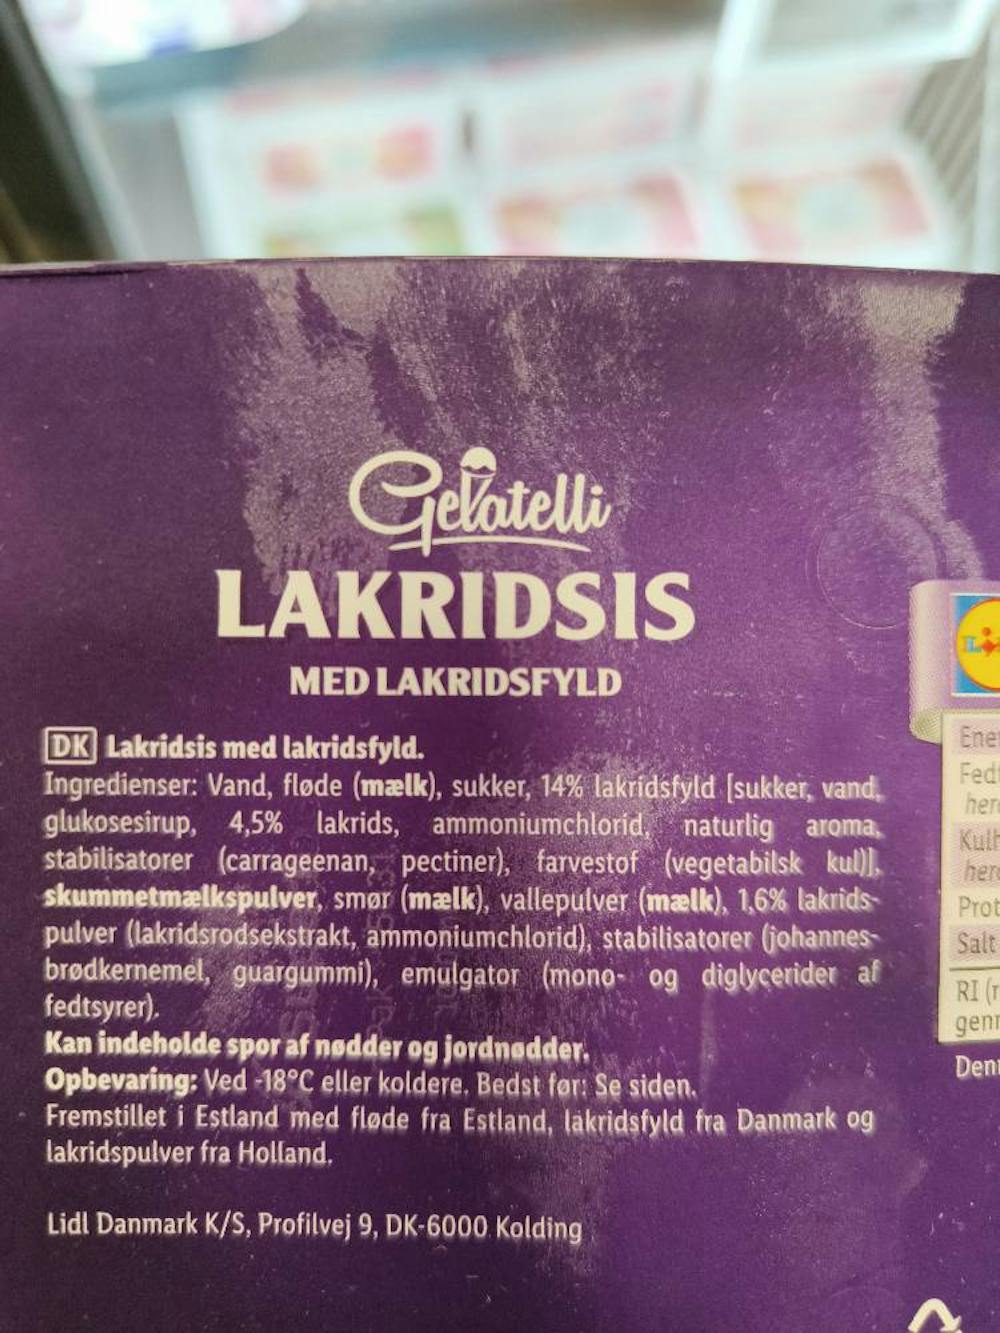 Ingrediensliste - Lakridsis, Gelatelli